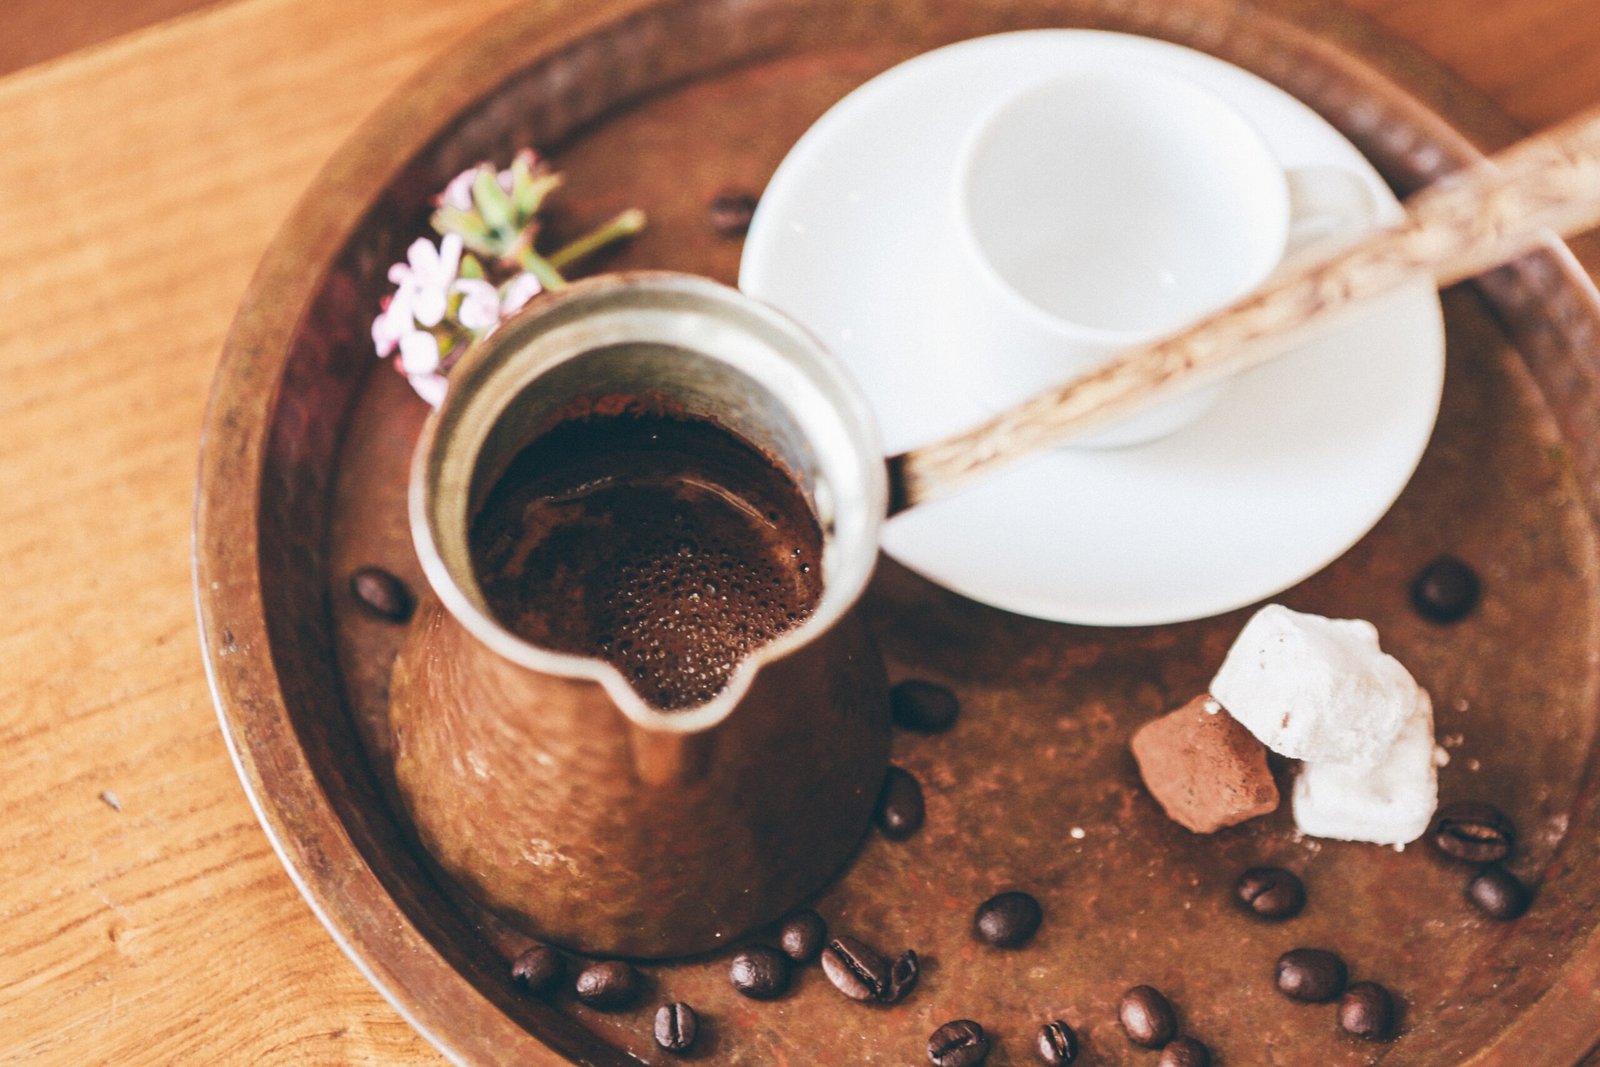 Turkish or Greek coffee, Recipe